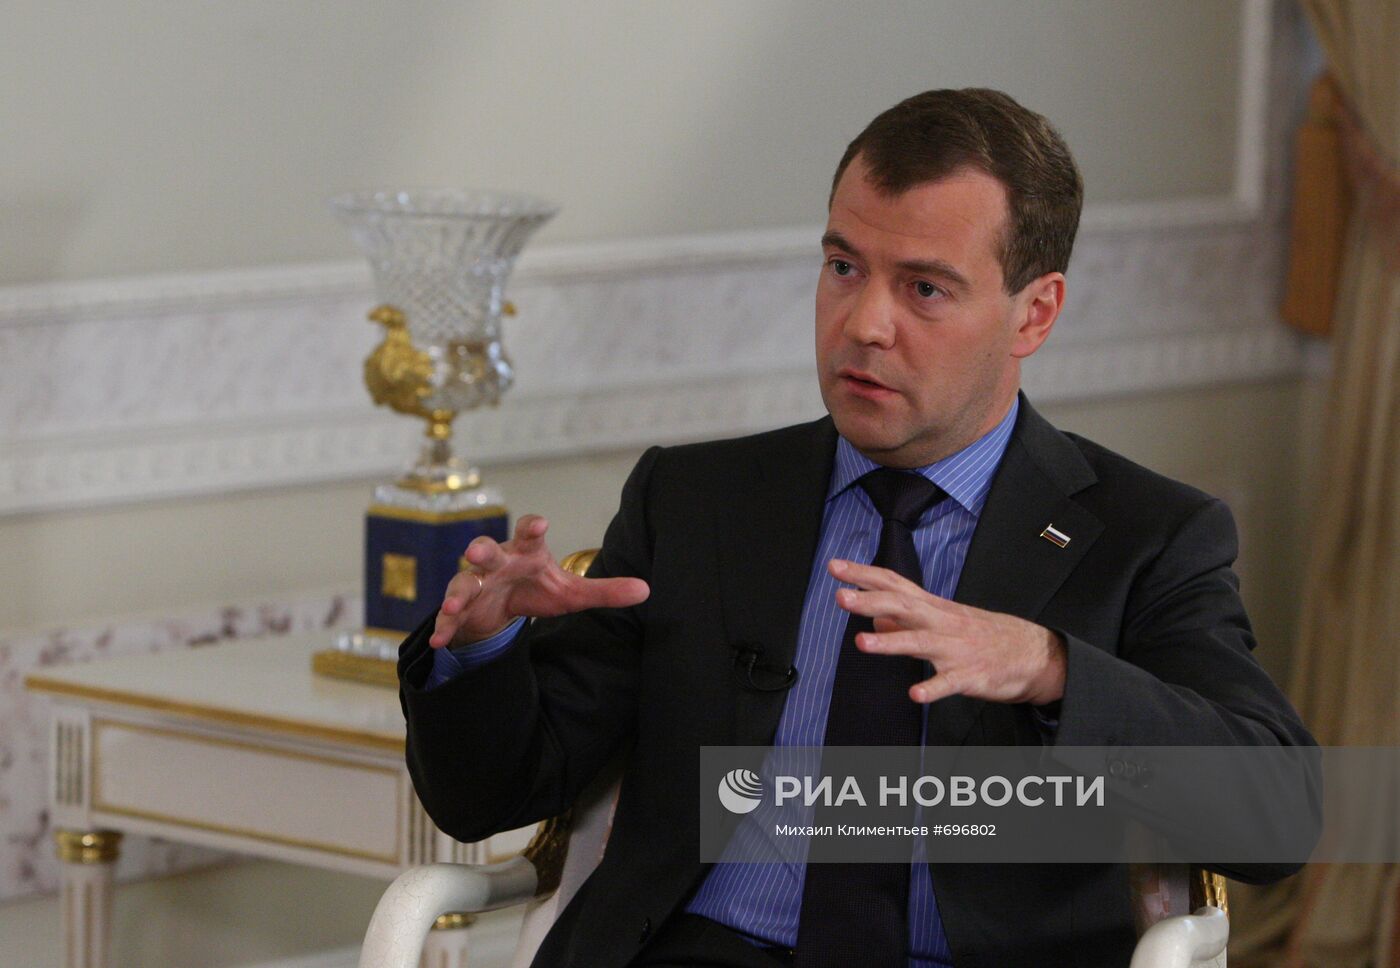 Д.Медведев дал интервью газете "Уолл Стрит Джорнал"